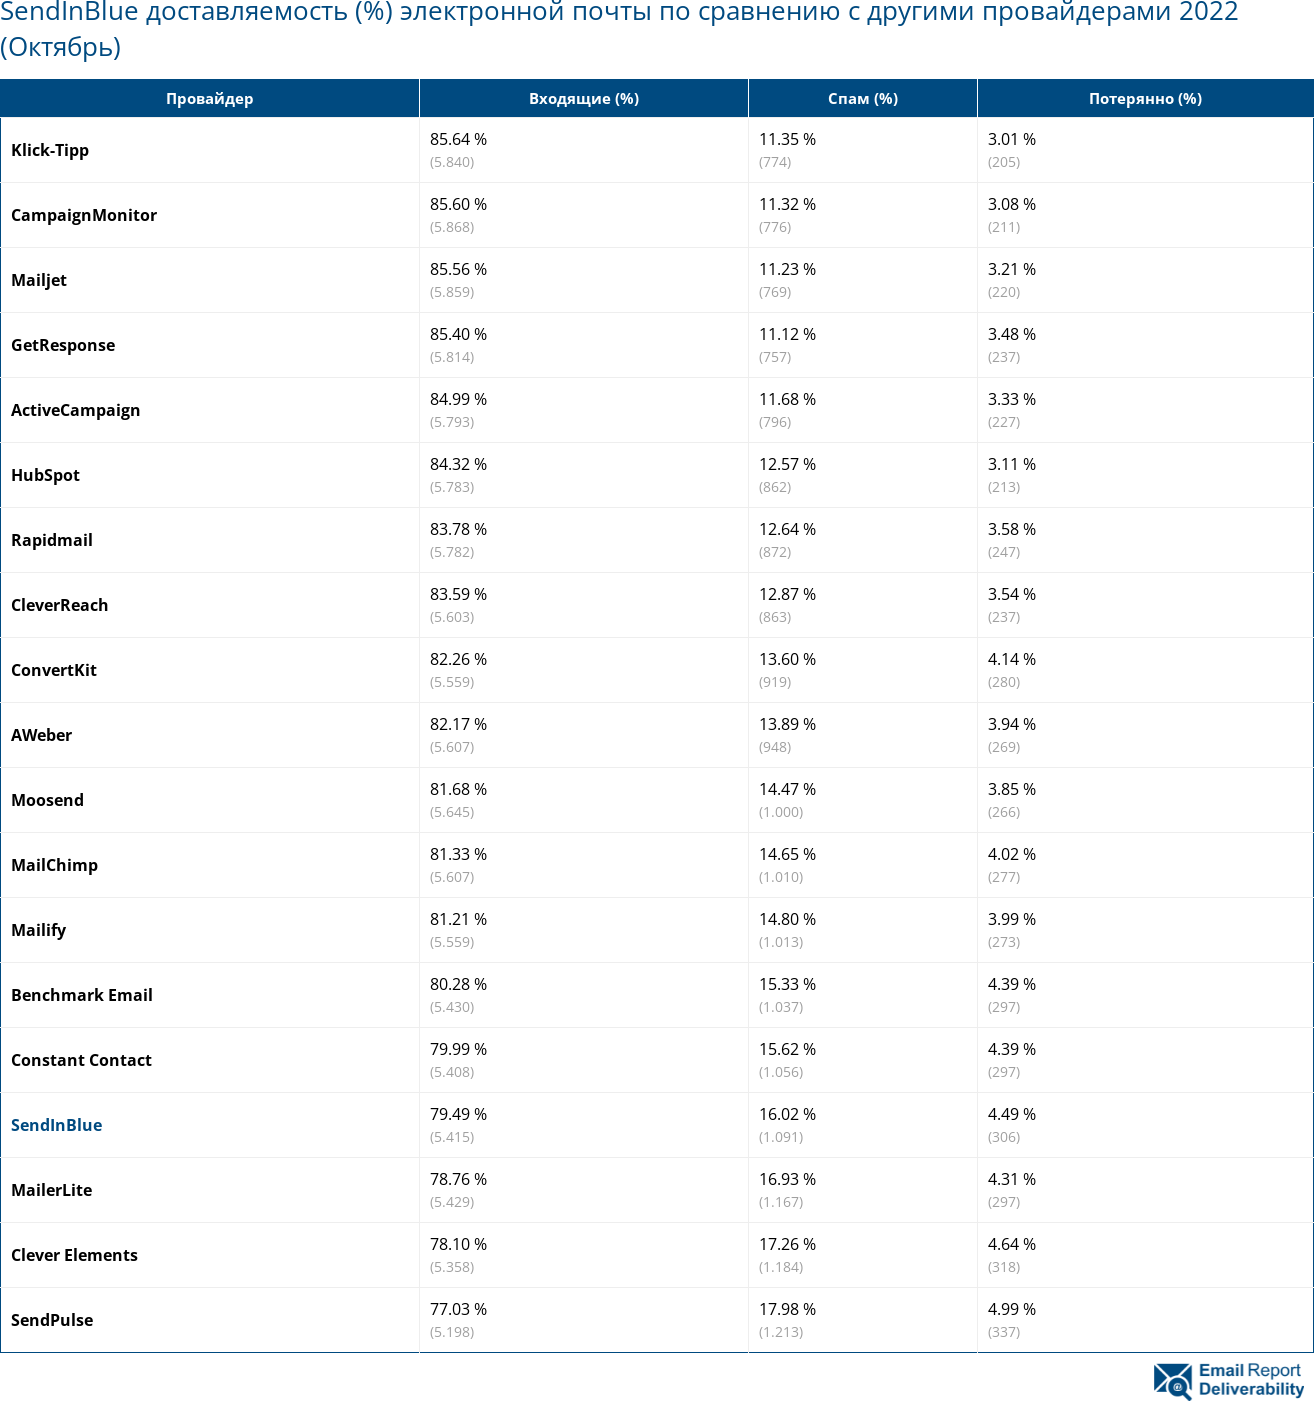 SendInBlue доставляемость (%) электронной почты по сравнению с другими провайдерами 2022 (Октябрь)